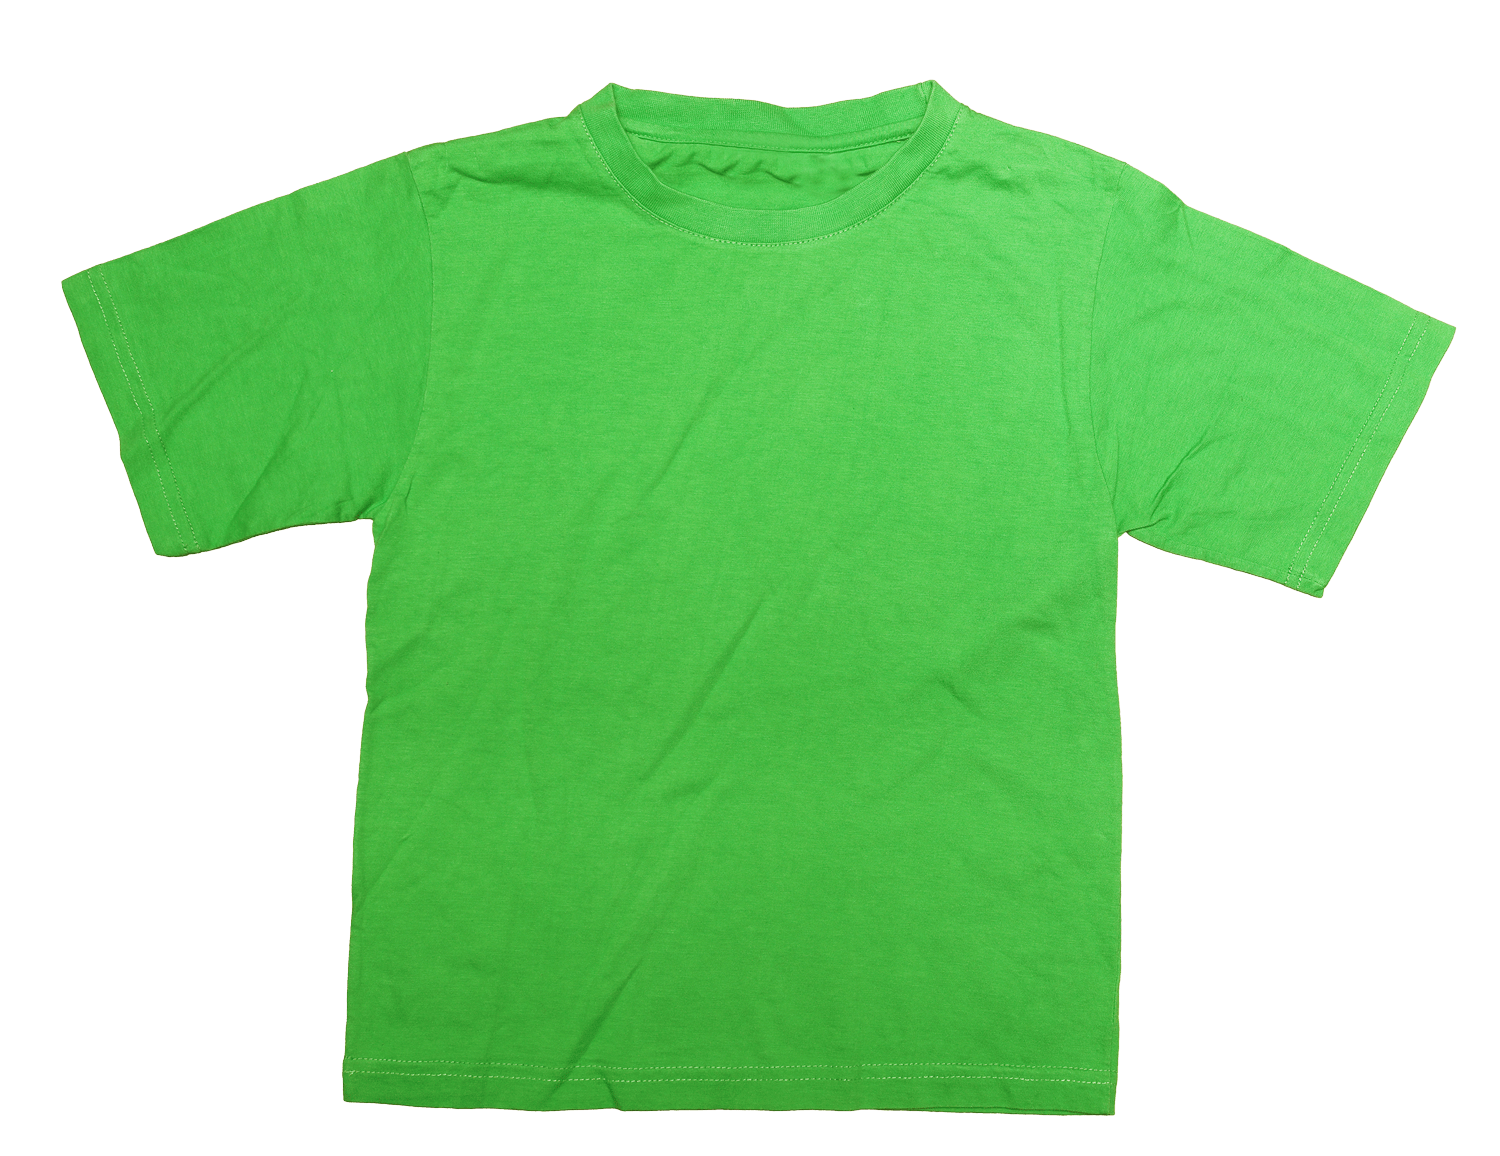 a green shirt